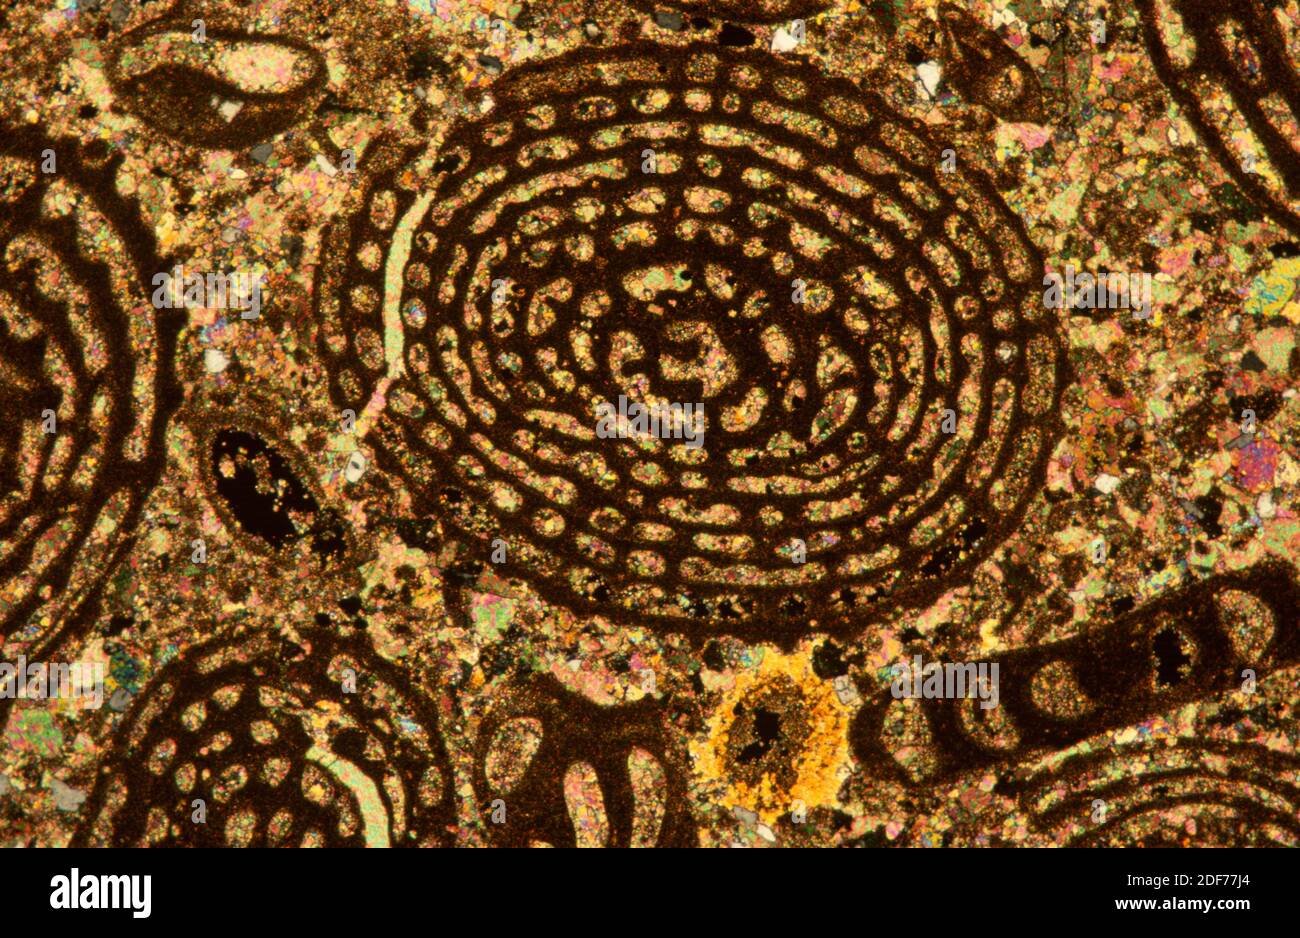 Calcare con Nummuliti, una foraminifera estinta. Fotomicrografia, sezione sottile, luce polarizzata. Foto Stock